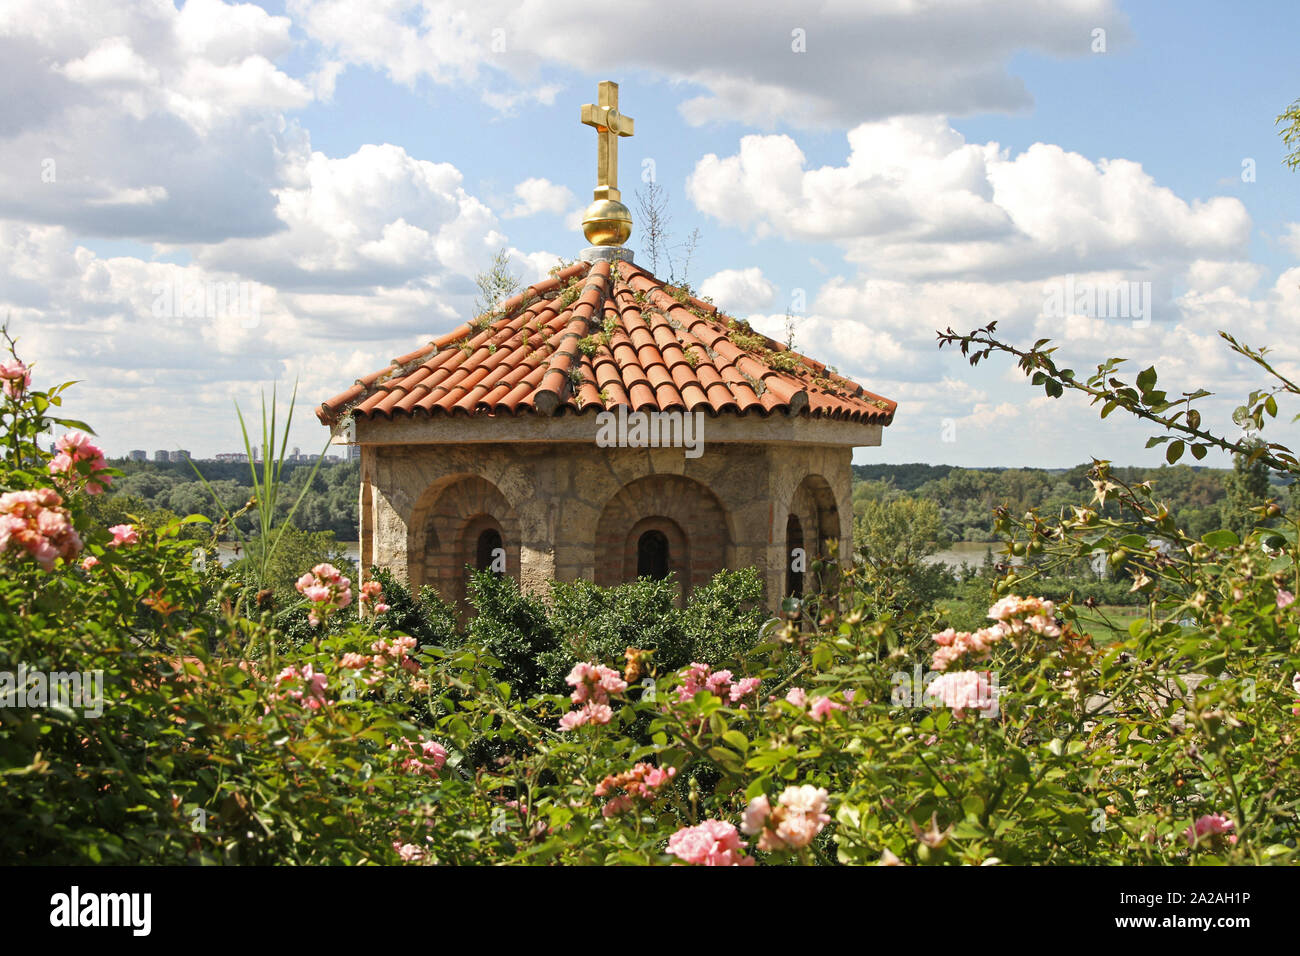 Ruzitsa (Il Little Rose) Saint Petka Chiesa torre, Fortezza di Kalemegdan, Parco Kalemegdan, Belgrado, Serbia. Foto Stock